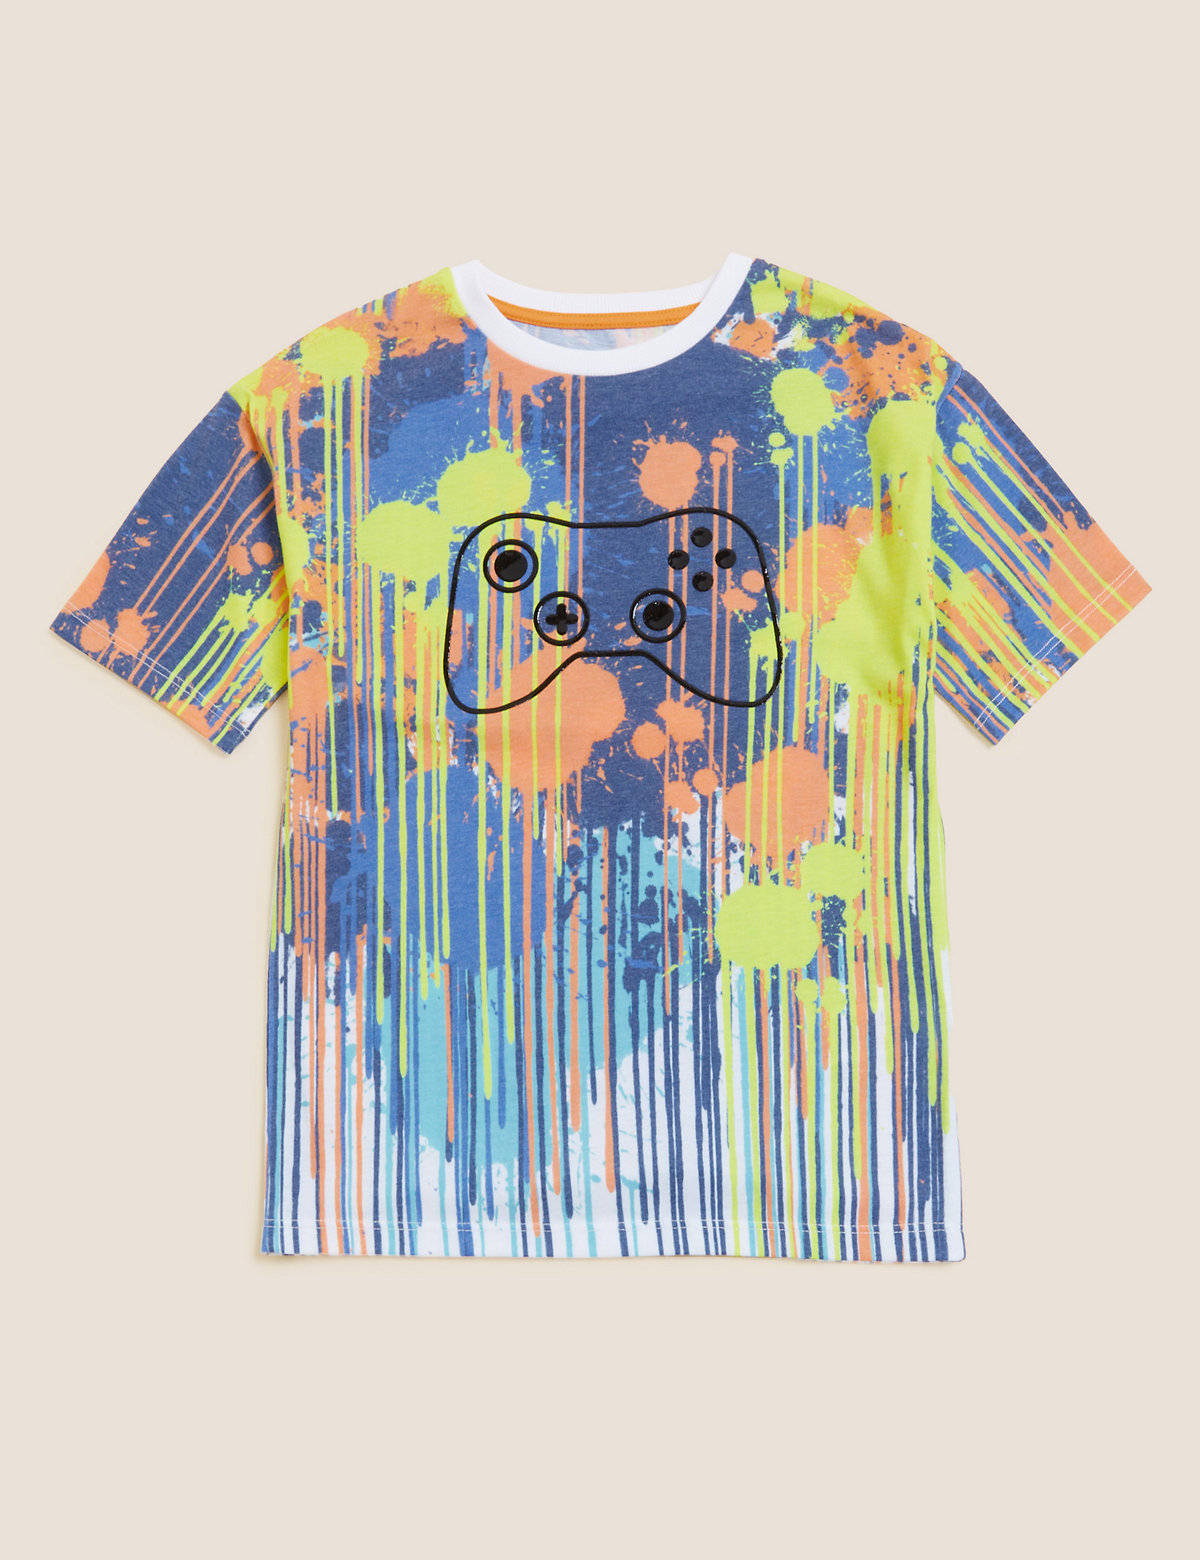 Paint Splatter Print T-Shirt (6-16 Yrs)